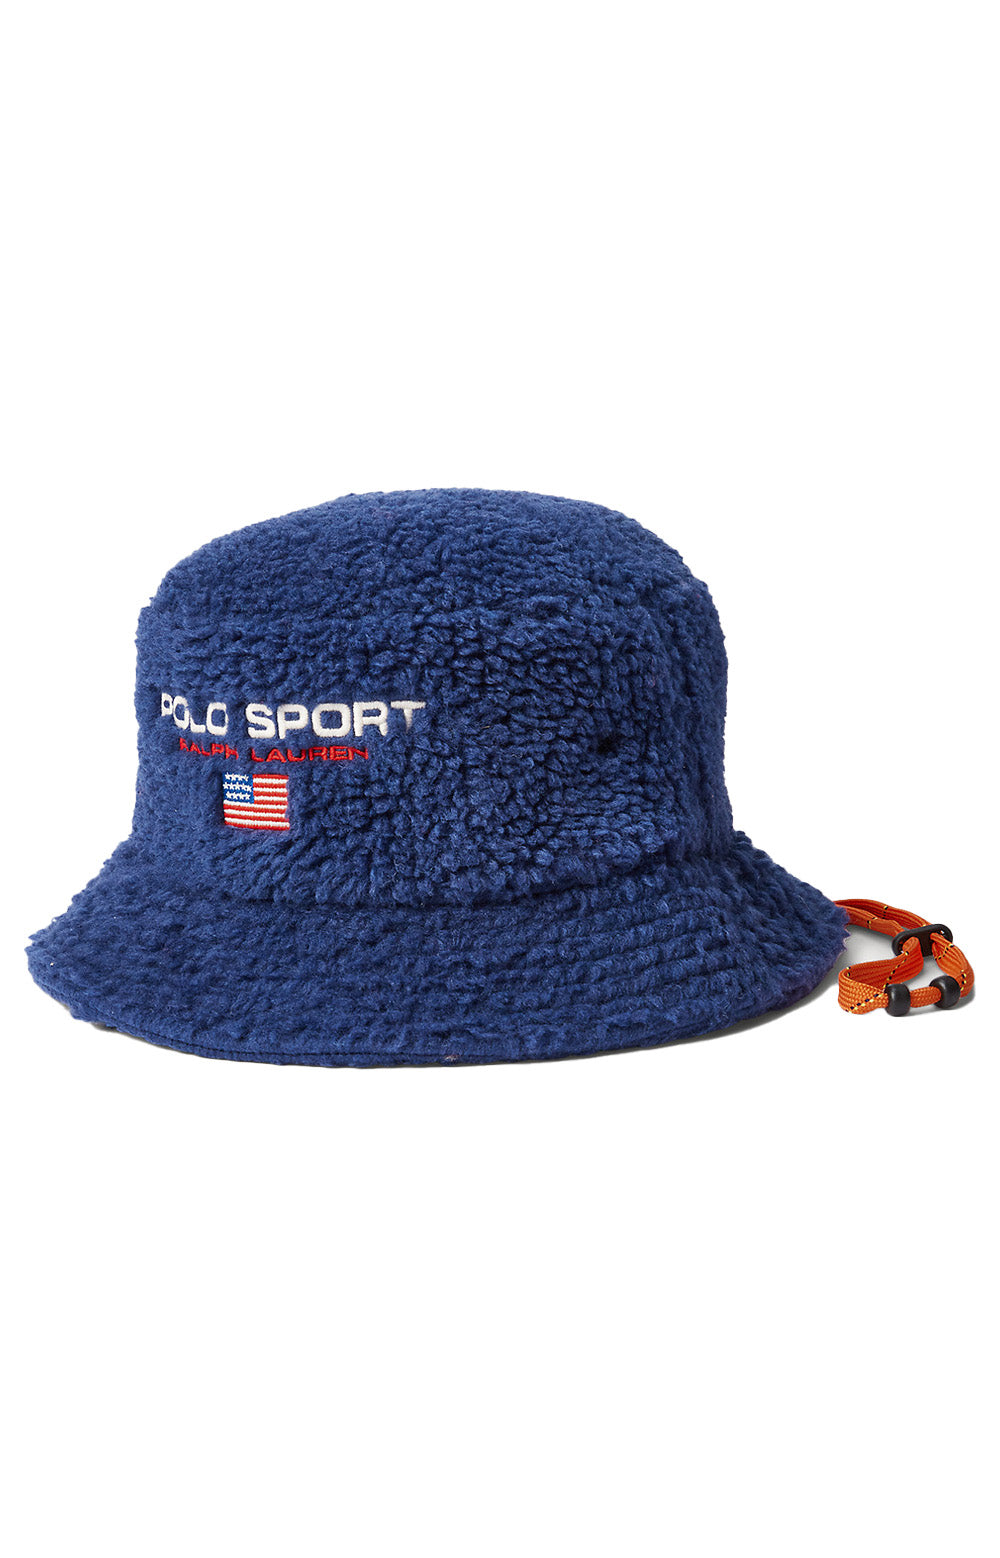 Polo Sport Fleece Bucket Hat - Harrison Blue